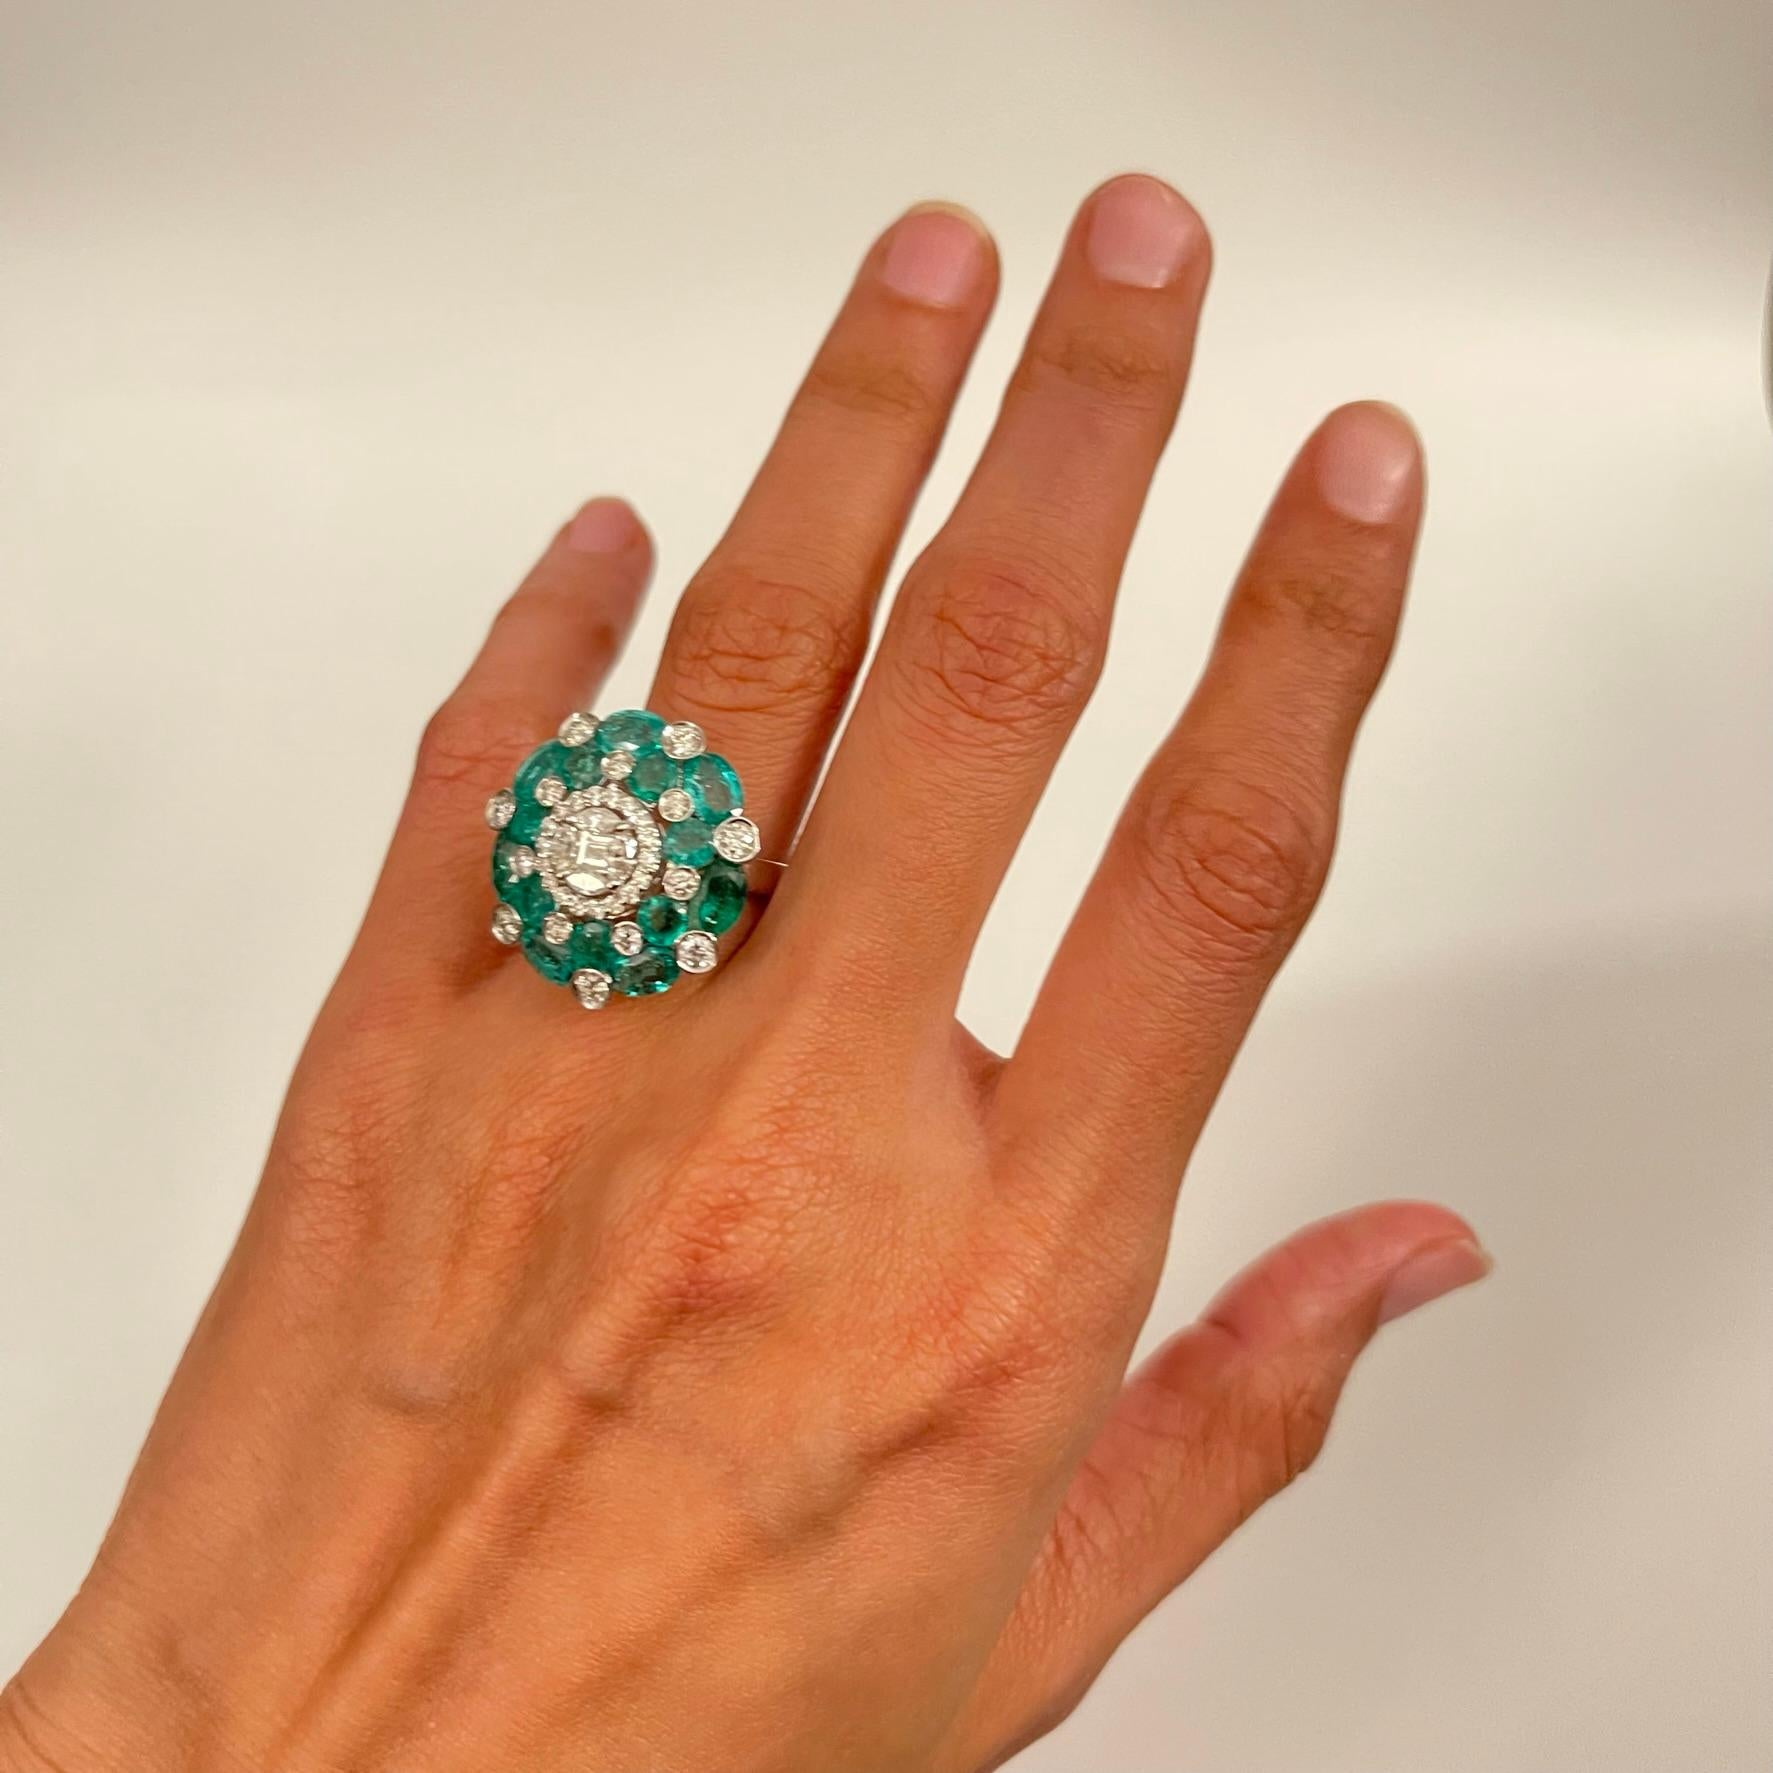 1.3 carat emerald